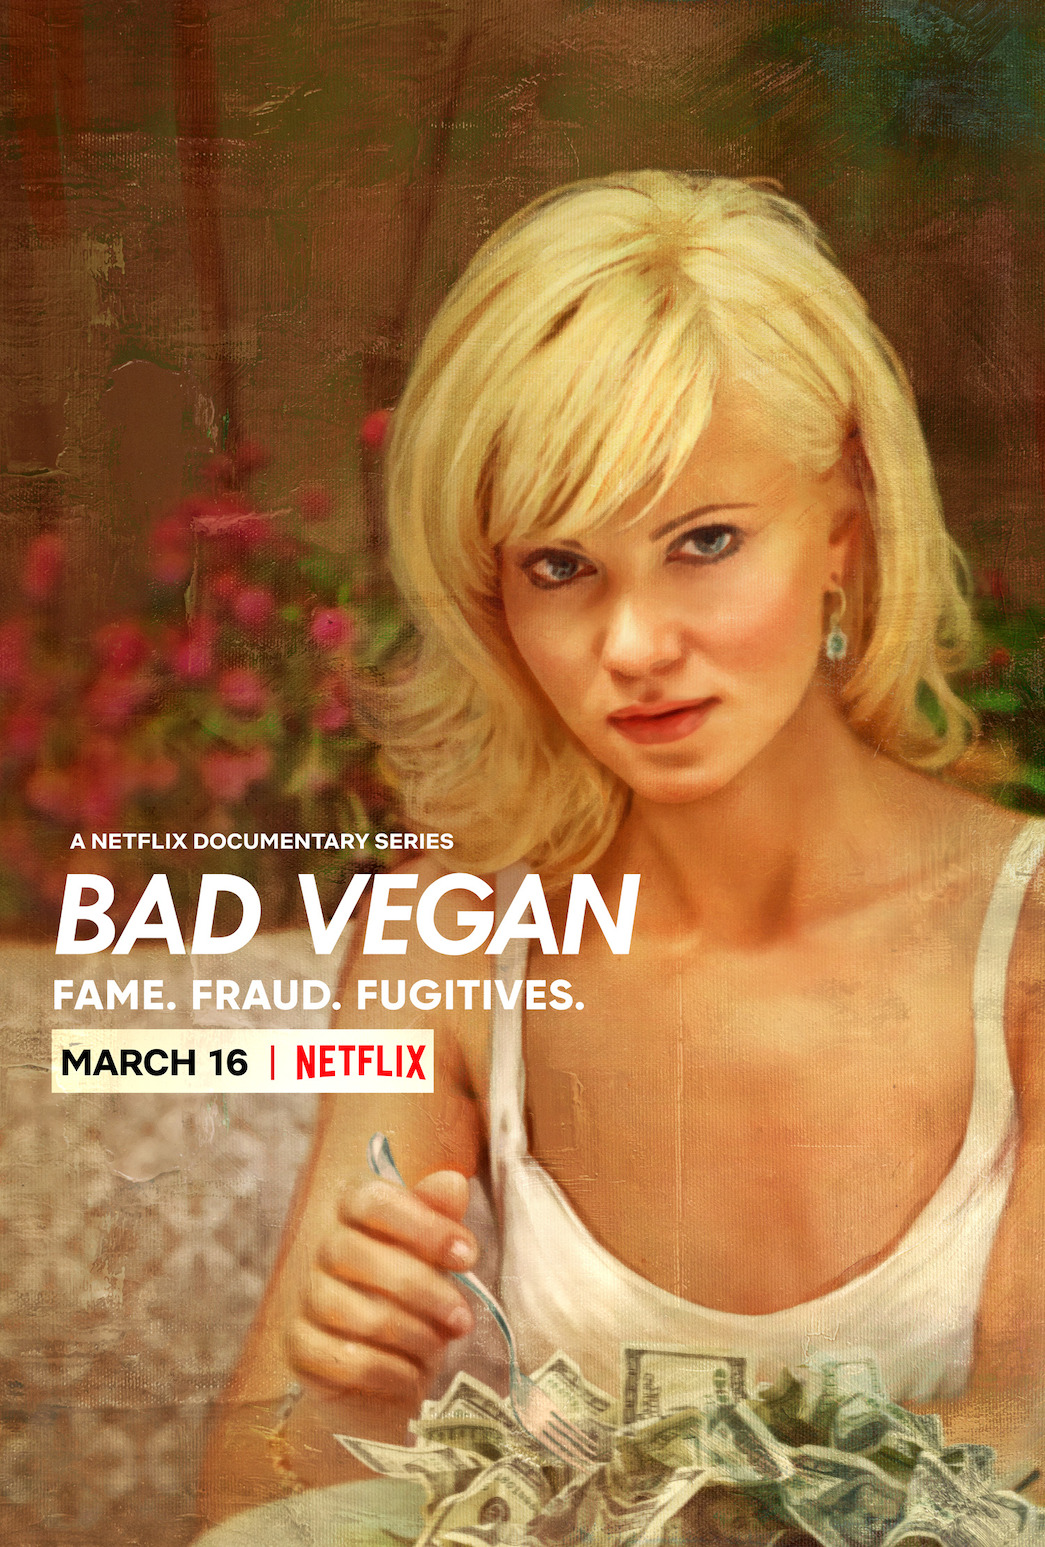 Is “Bad Vegan Fame. Fraud. Fugitives” on Netflix